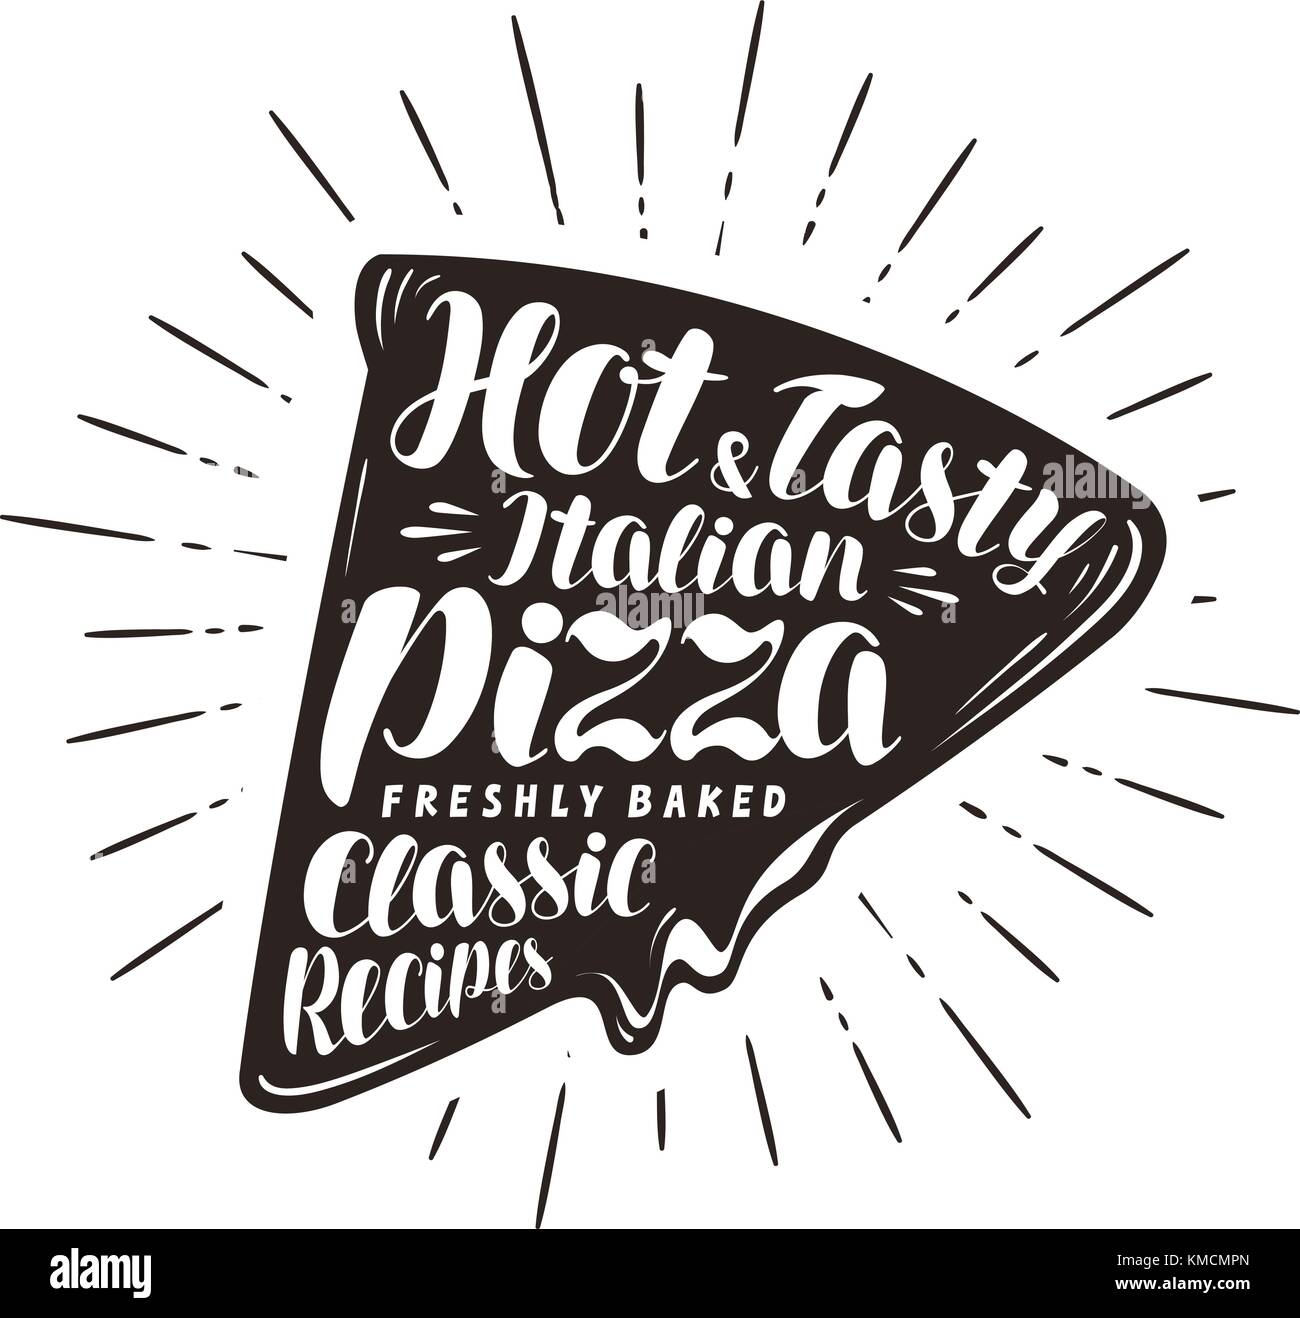 Pieza de pizza, pizzería, concepto de comida rápida. Escrito por letras a mano o caligrafía. Tipografía ilustración vectorial Ilustración del Vector